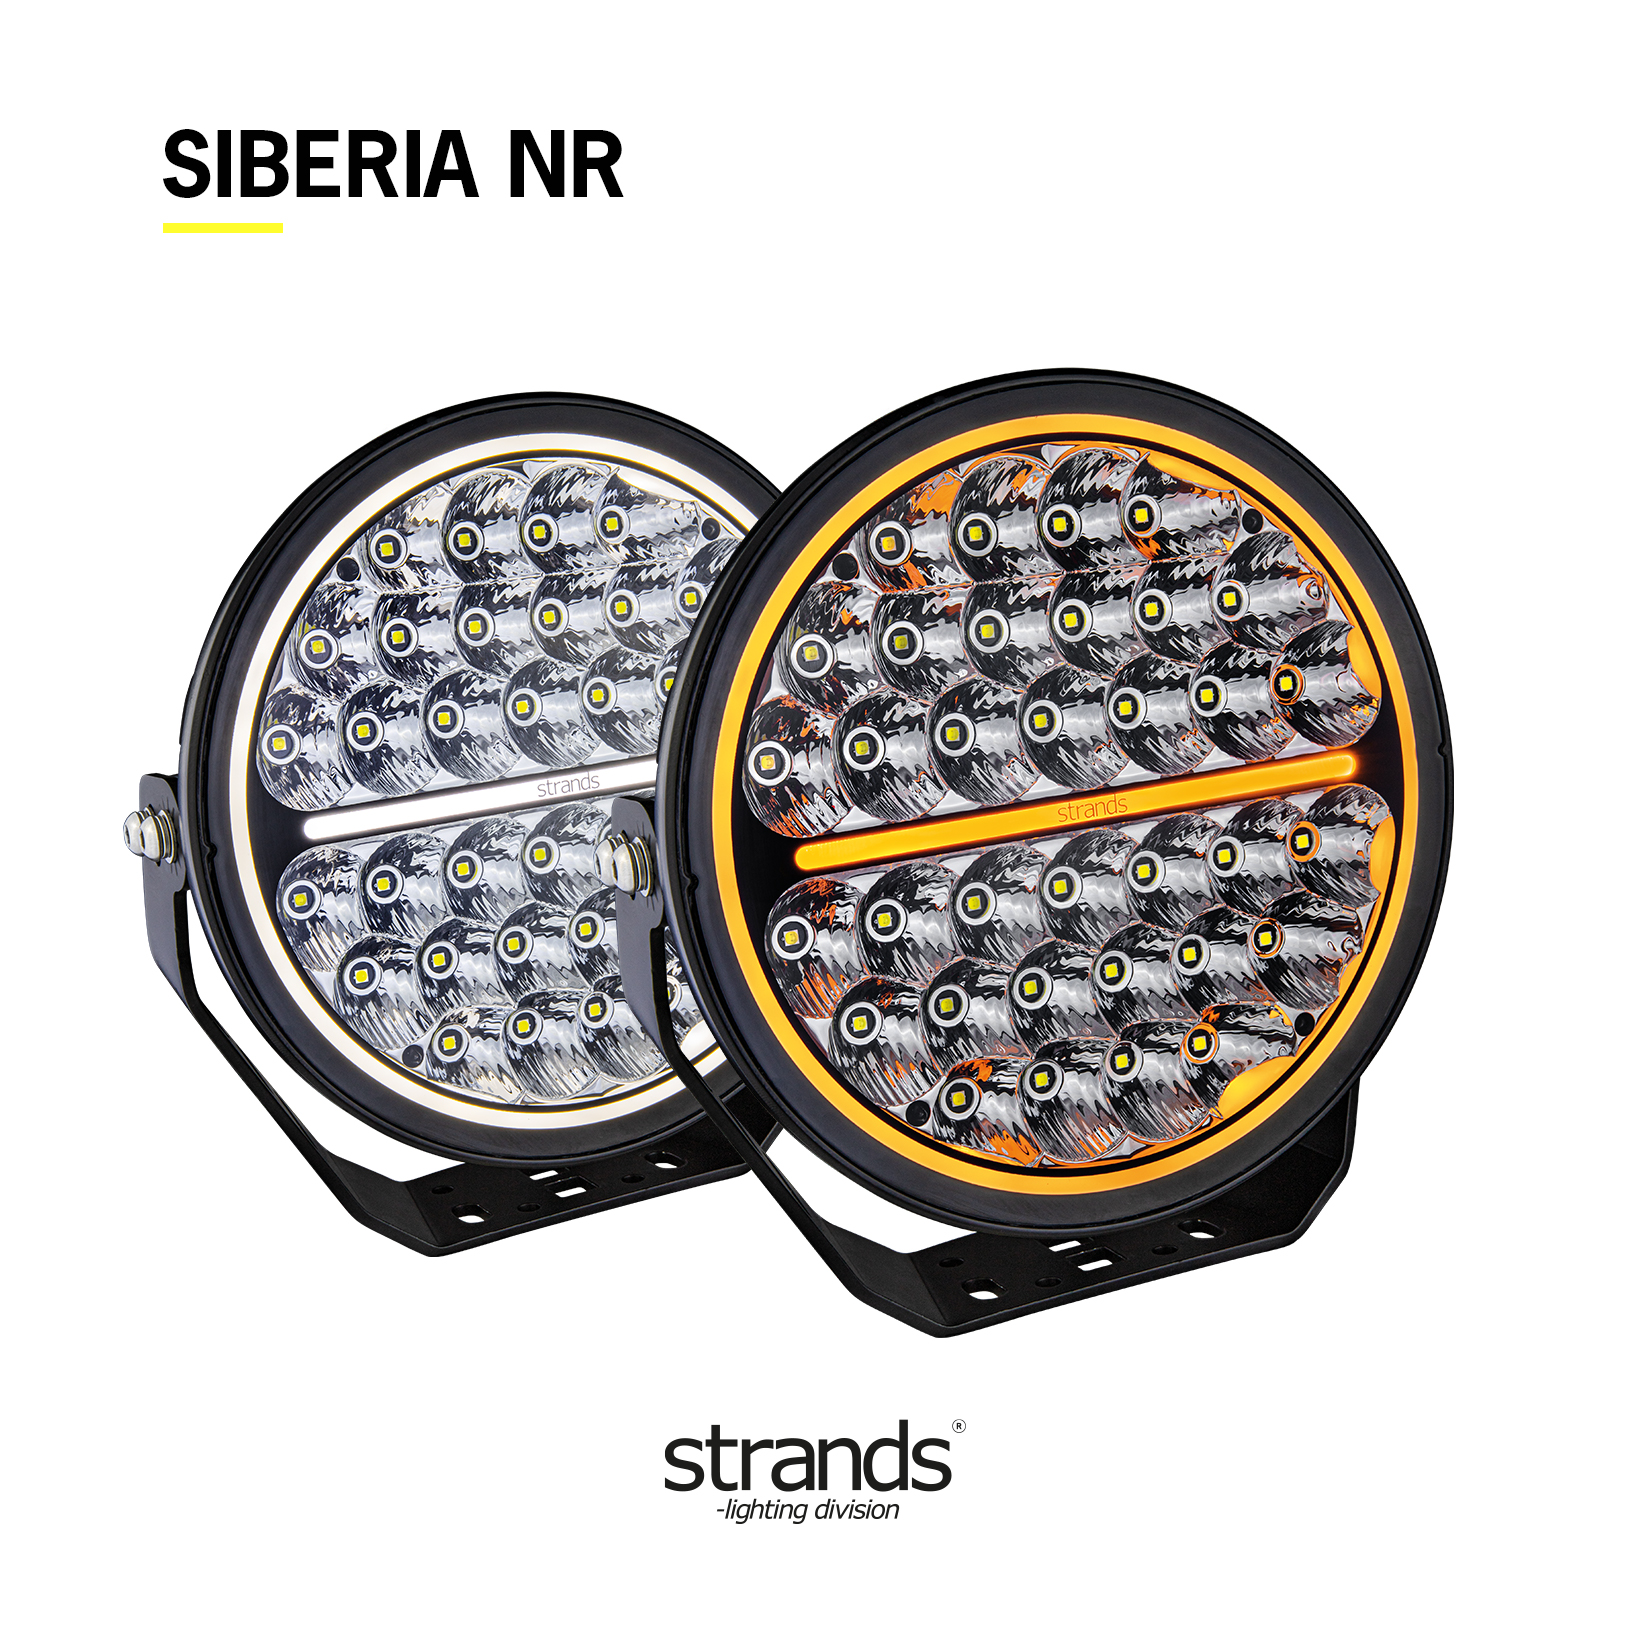 Linterna frontal de largo alcance Strands Siberia Night Ranger 9